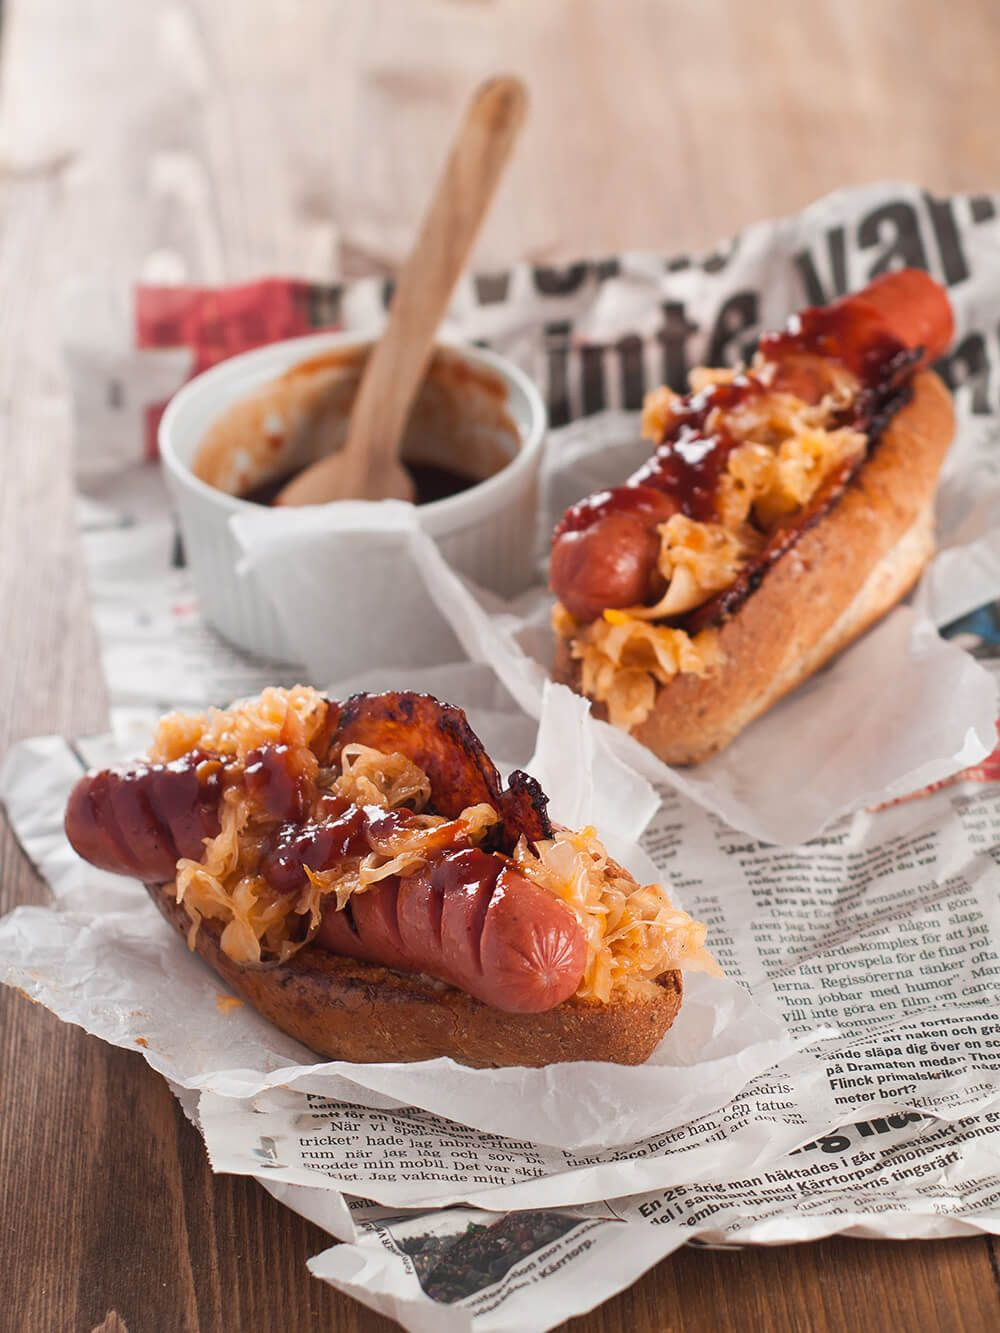 "Hot-dog" с беконом и тушёной капустой